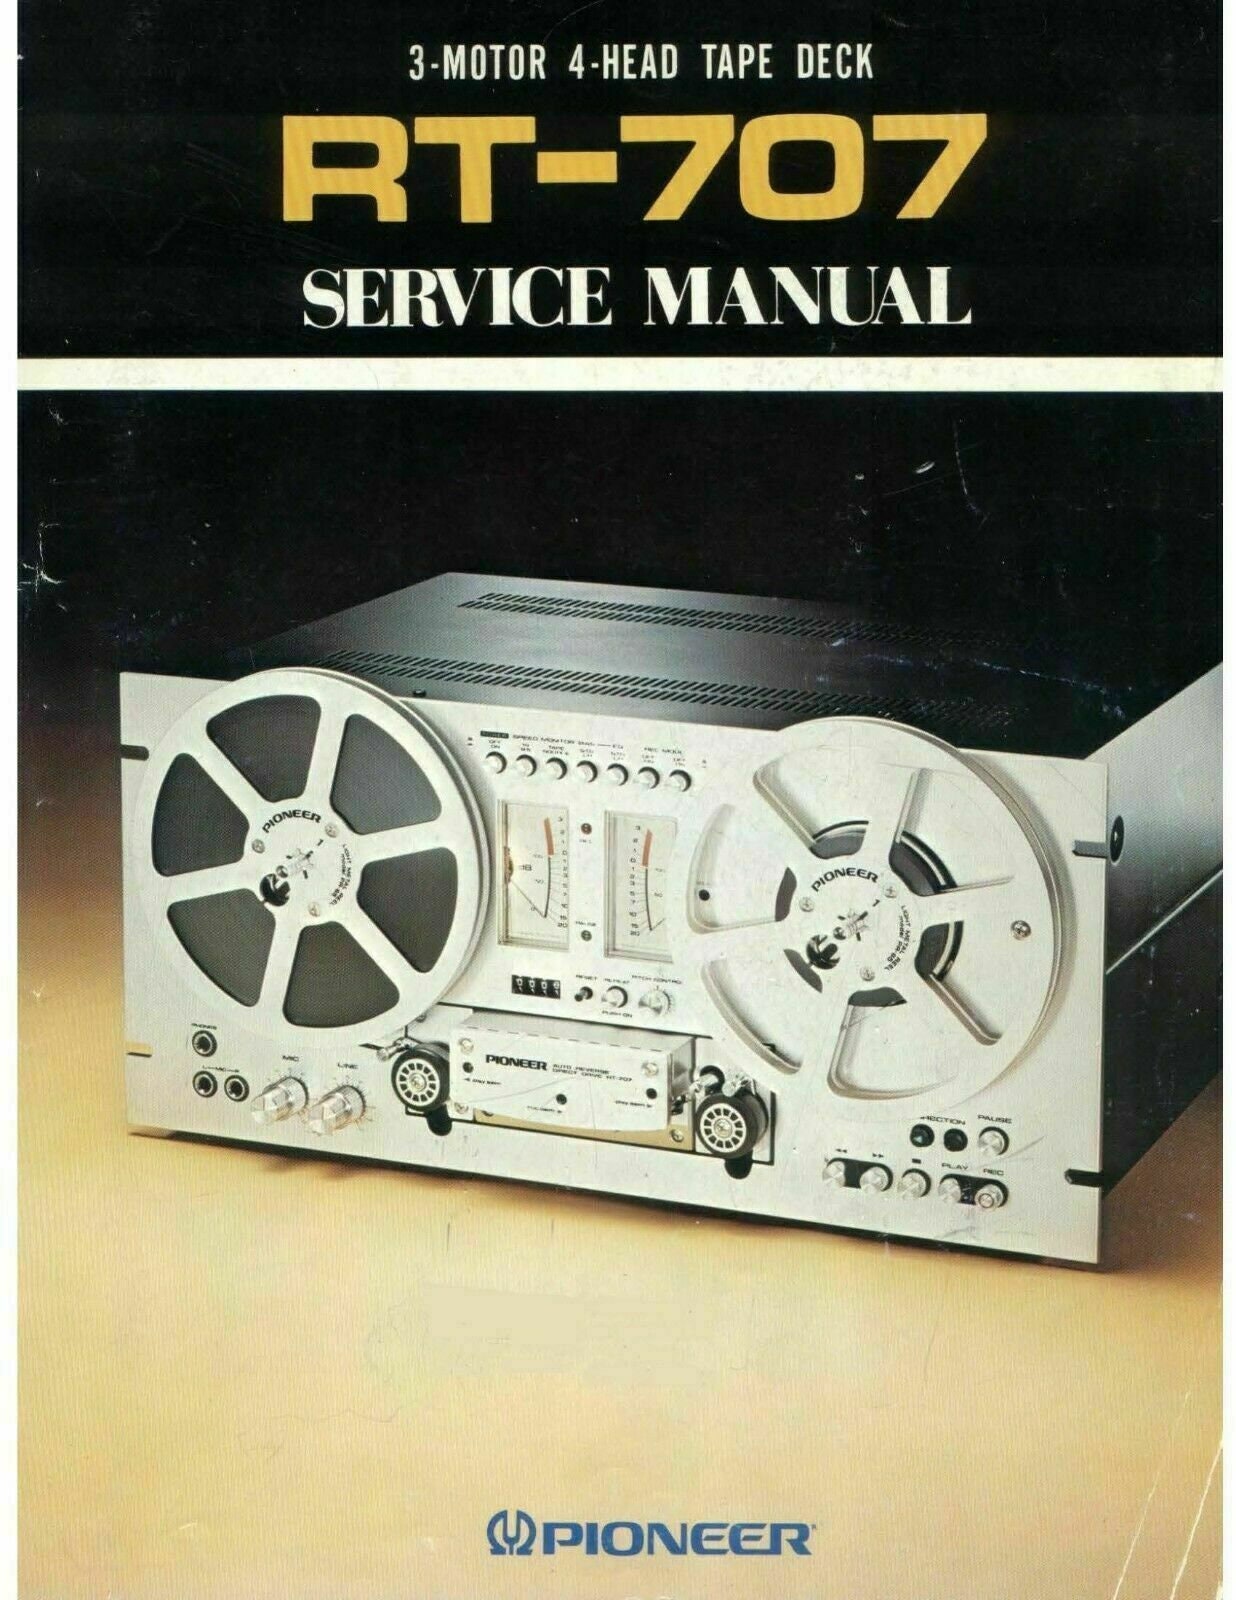 Owners Manual & Service Manual Pioneer RT-707 Reel to Reel Tape Deck 